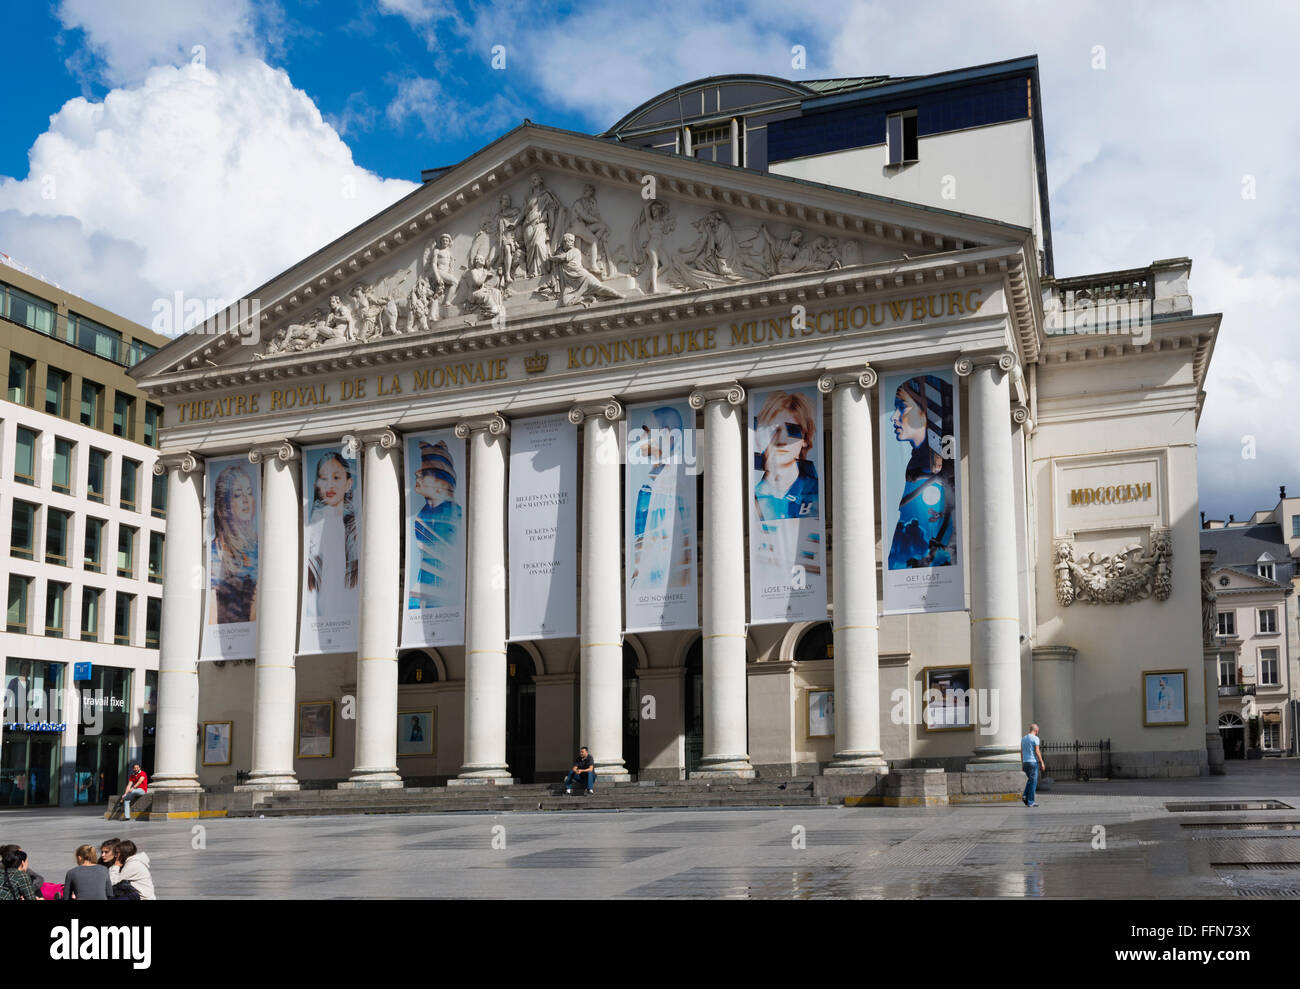 Theatre Royal de la monnaie ou l'Opéra, Bruxelles, Belgique, Europe Banque D'Images